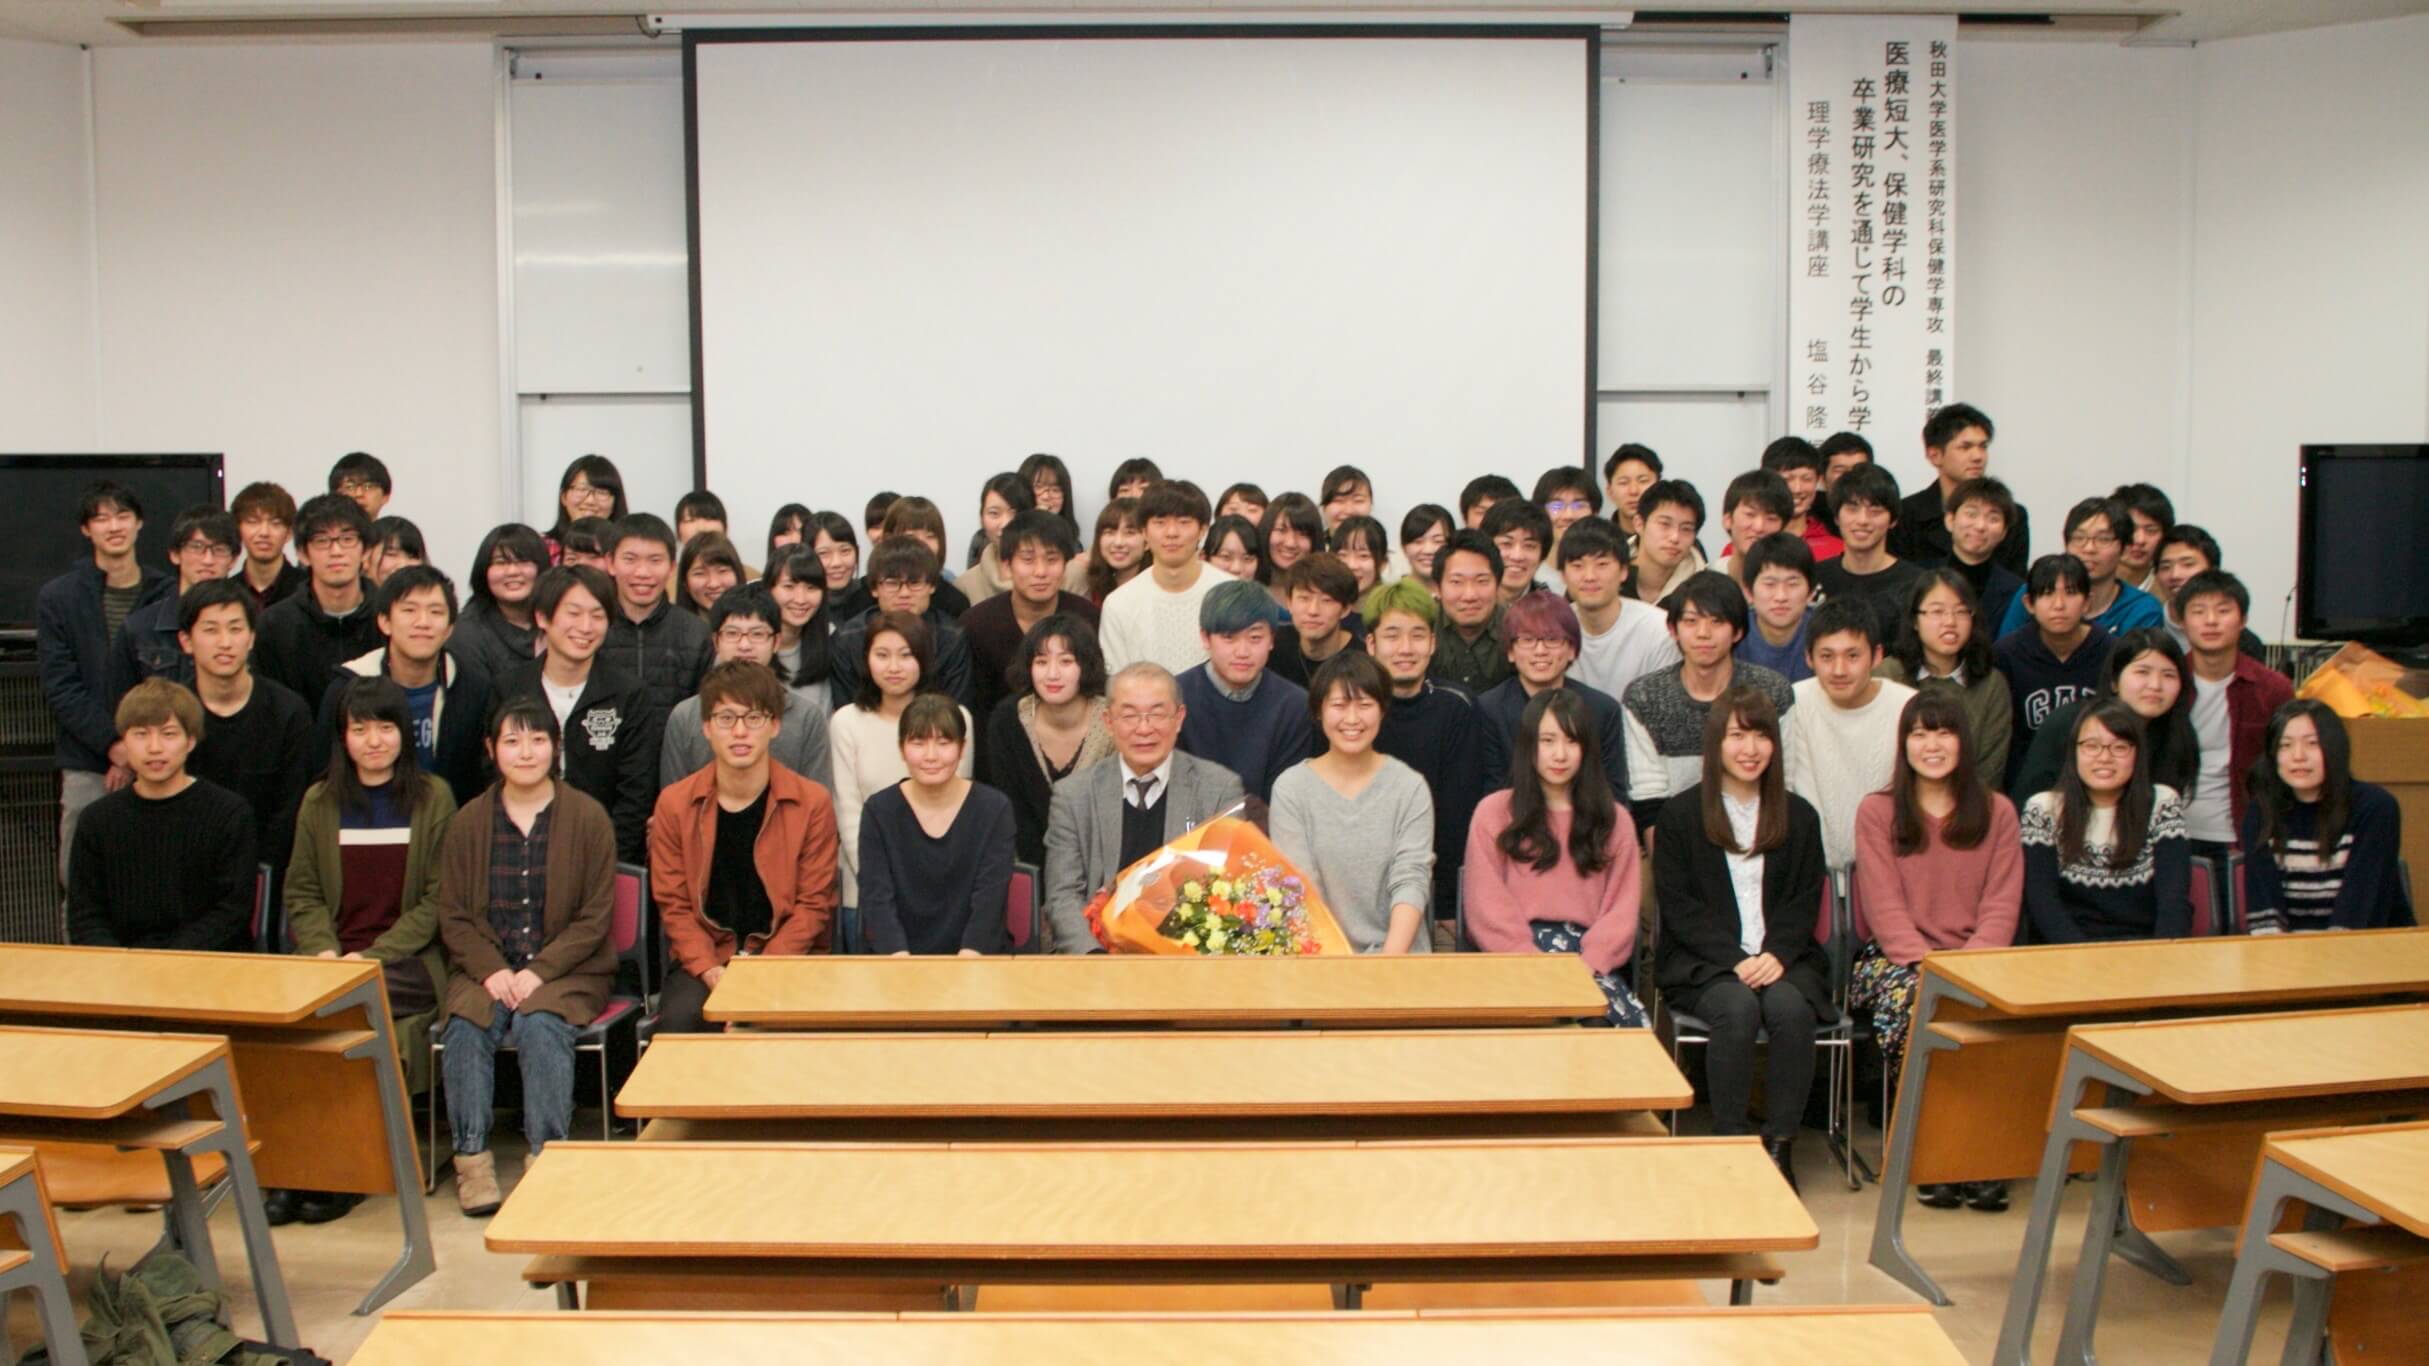 理学療法学講座の塩谷隆信教授の最終講義が行われました